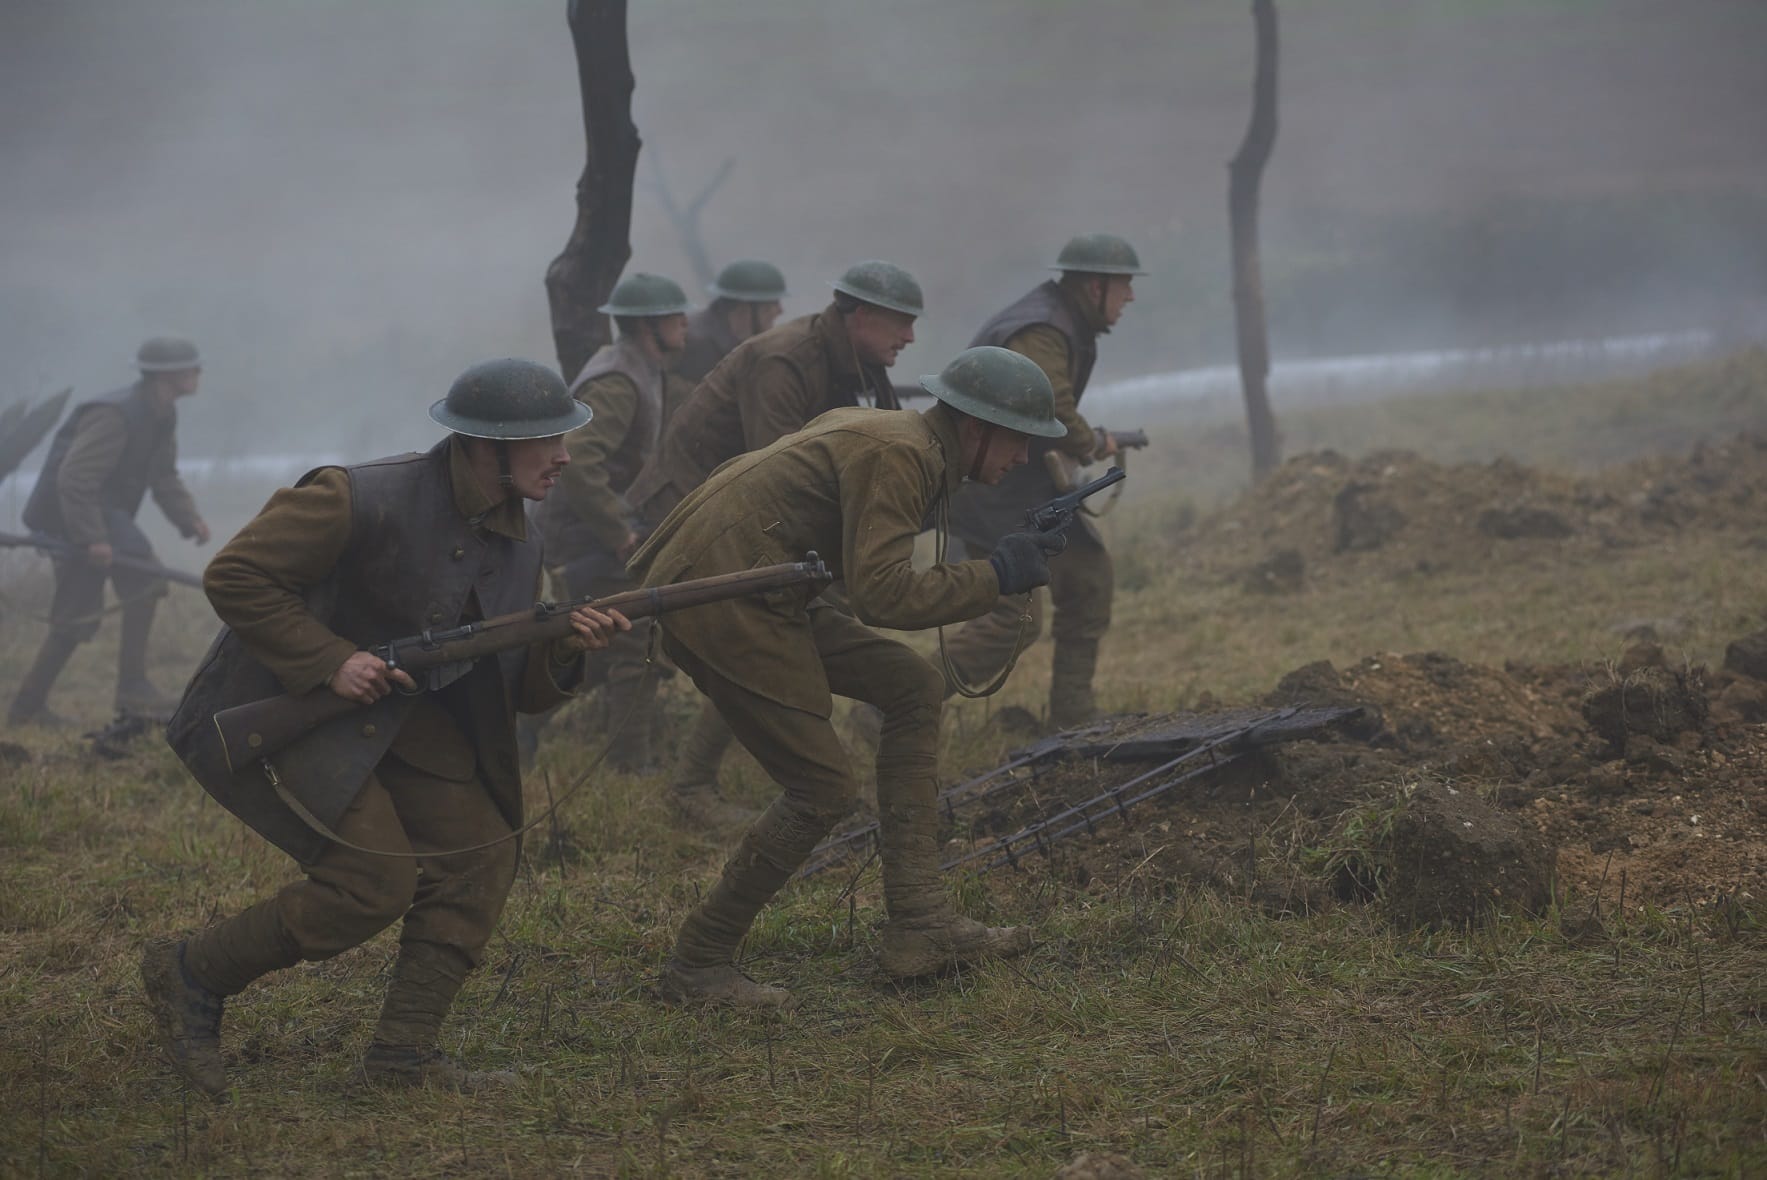 Tonbridge's Jack Holden reprises WWI roles in epic Journey's End